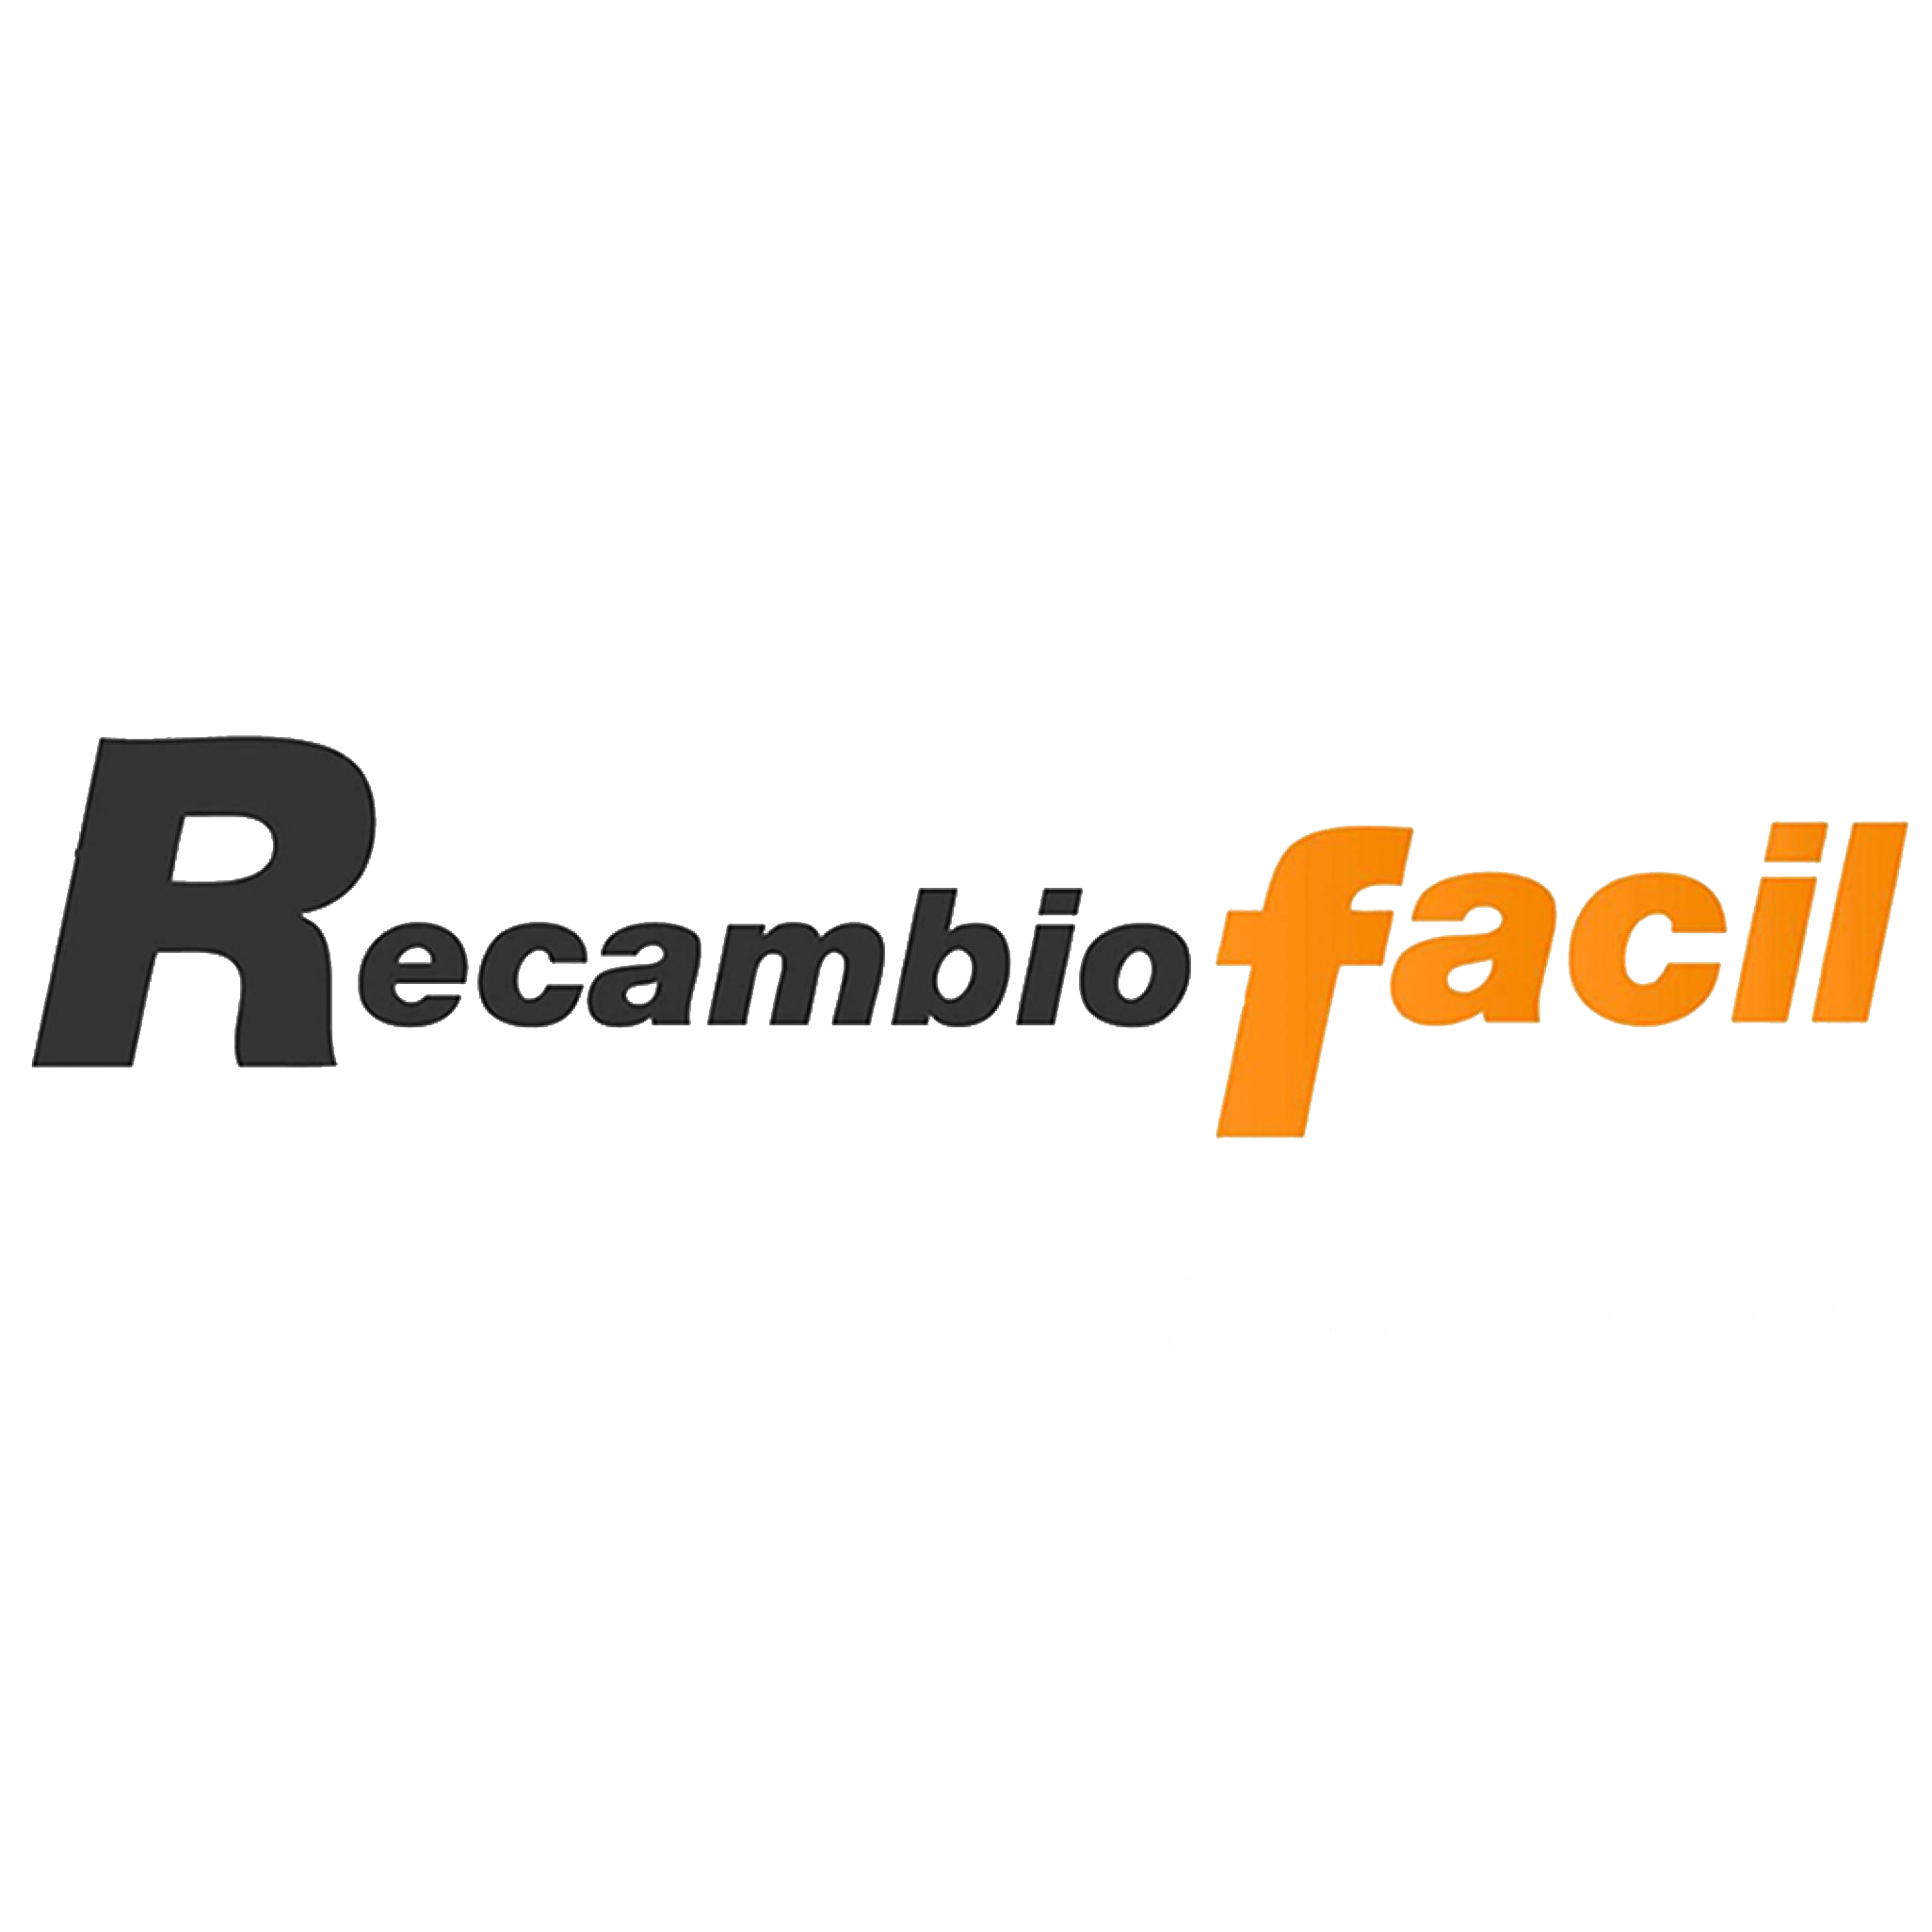 Conector para RecambioFacil | Sincronizar los recambios y despieces de los desguaces con RecambioFacil